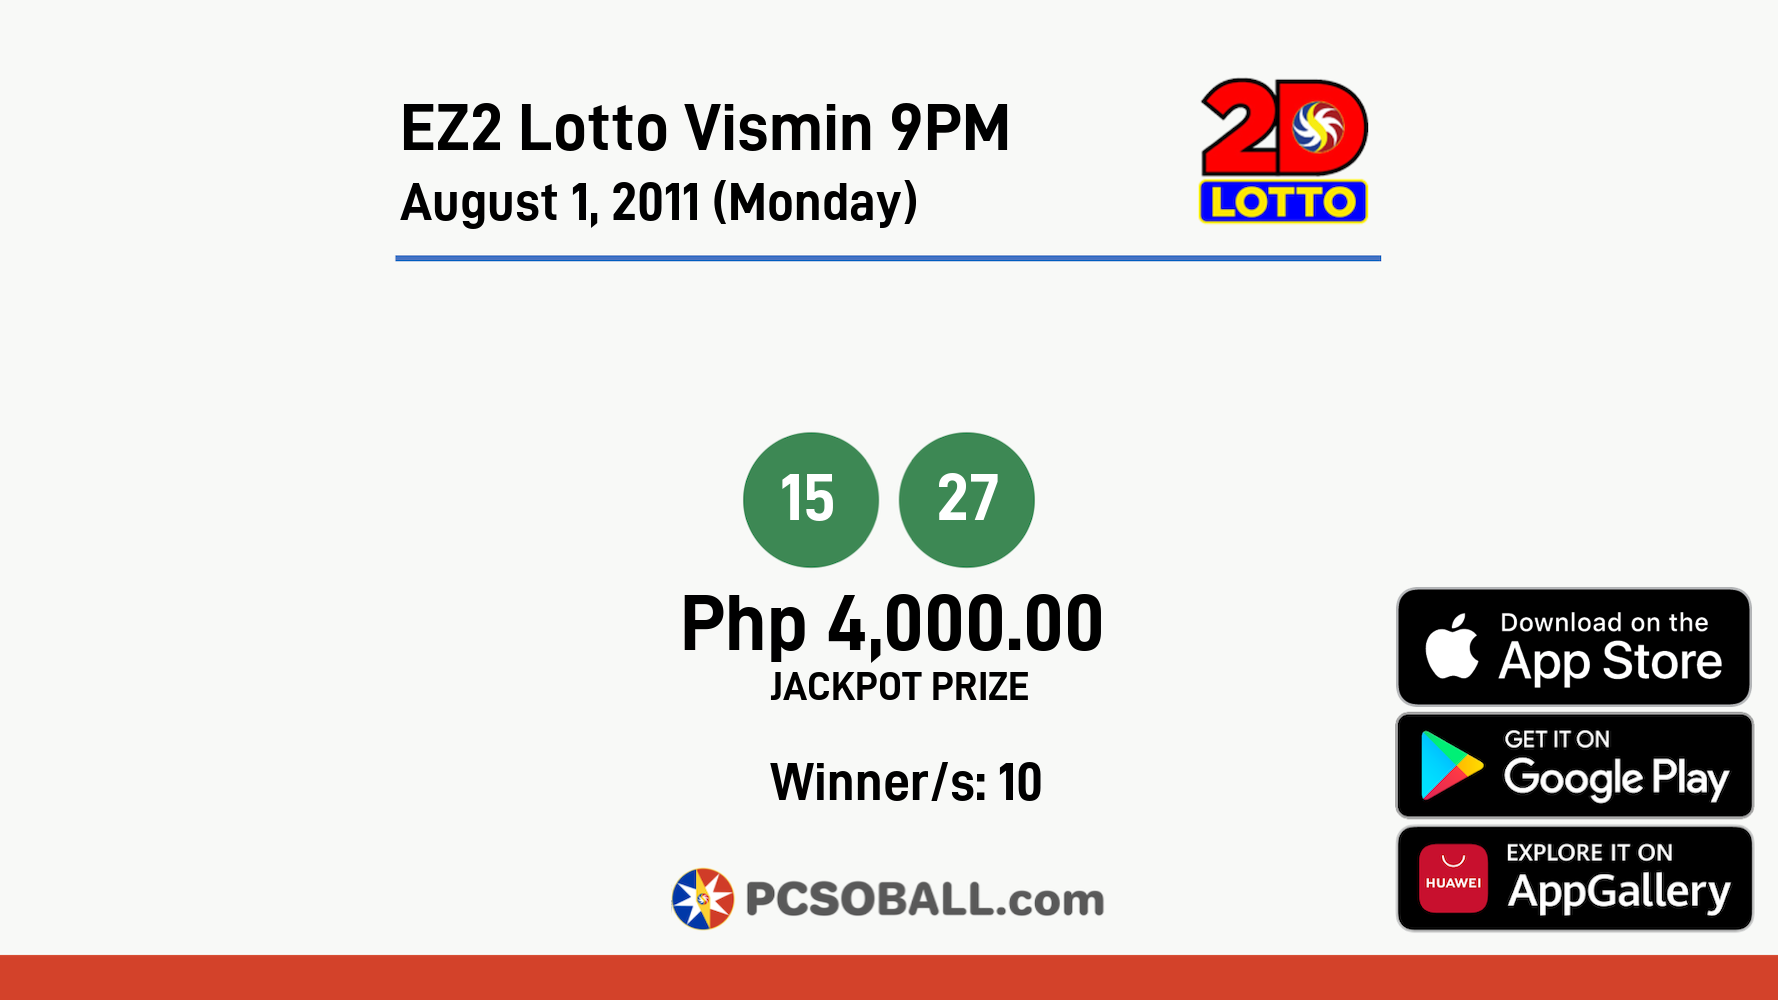 EZ2 Lotto Vismin 9PM August 1, 2011 (Monday) Result